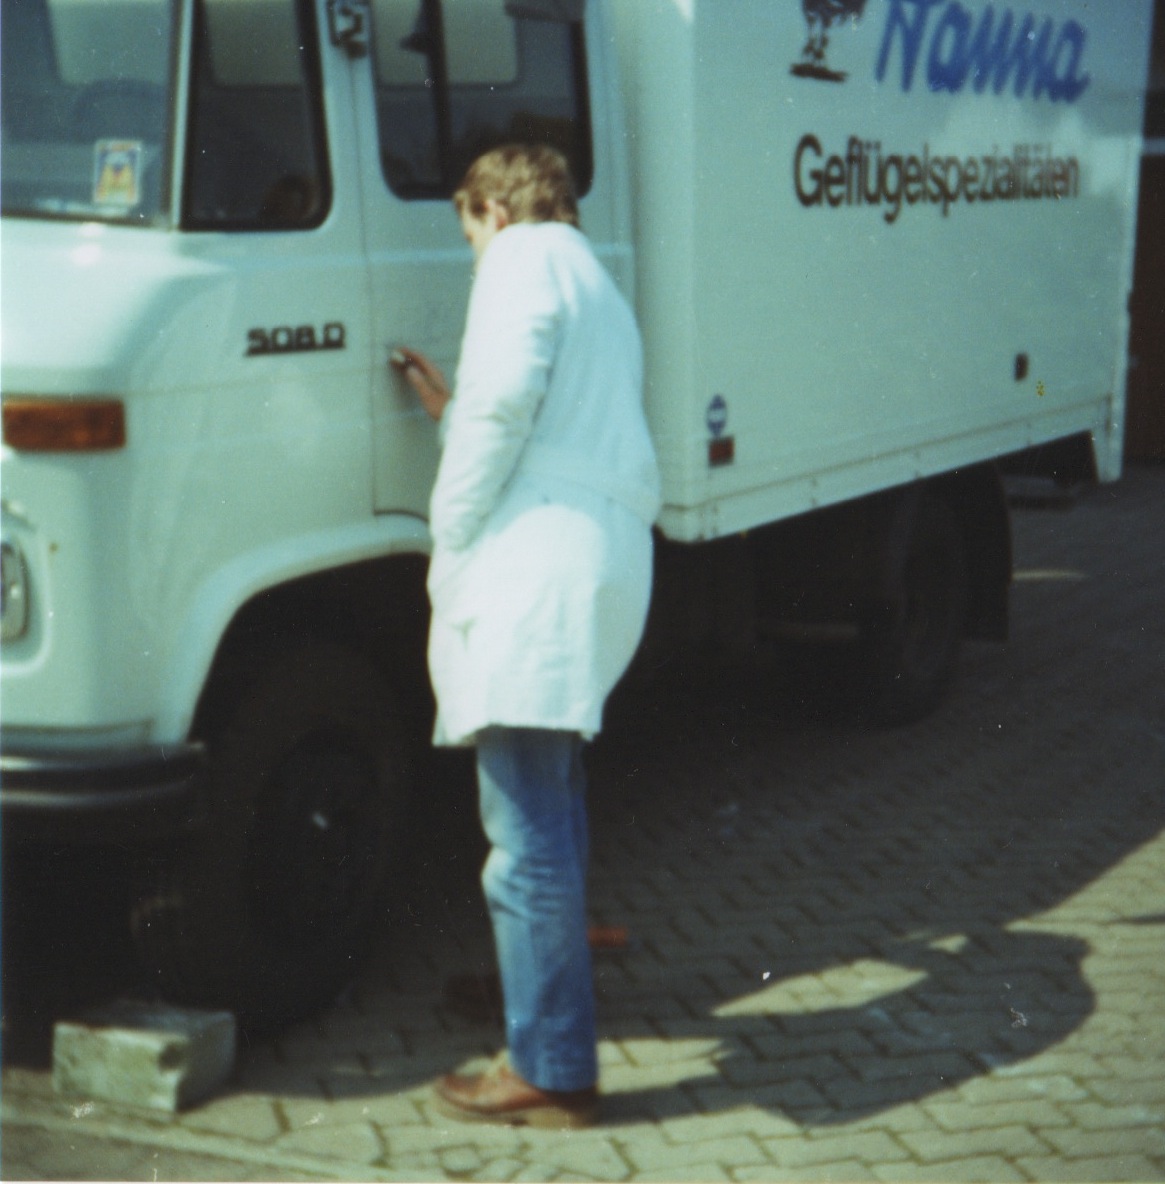 1982: Spezialisierung auf Beschriftungen und Schilder durch Ralf Neumann